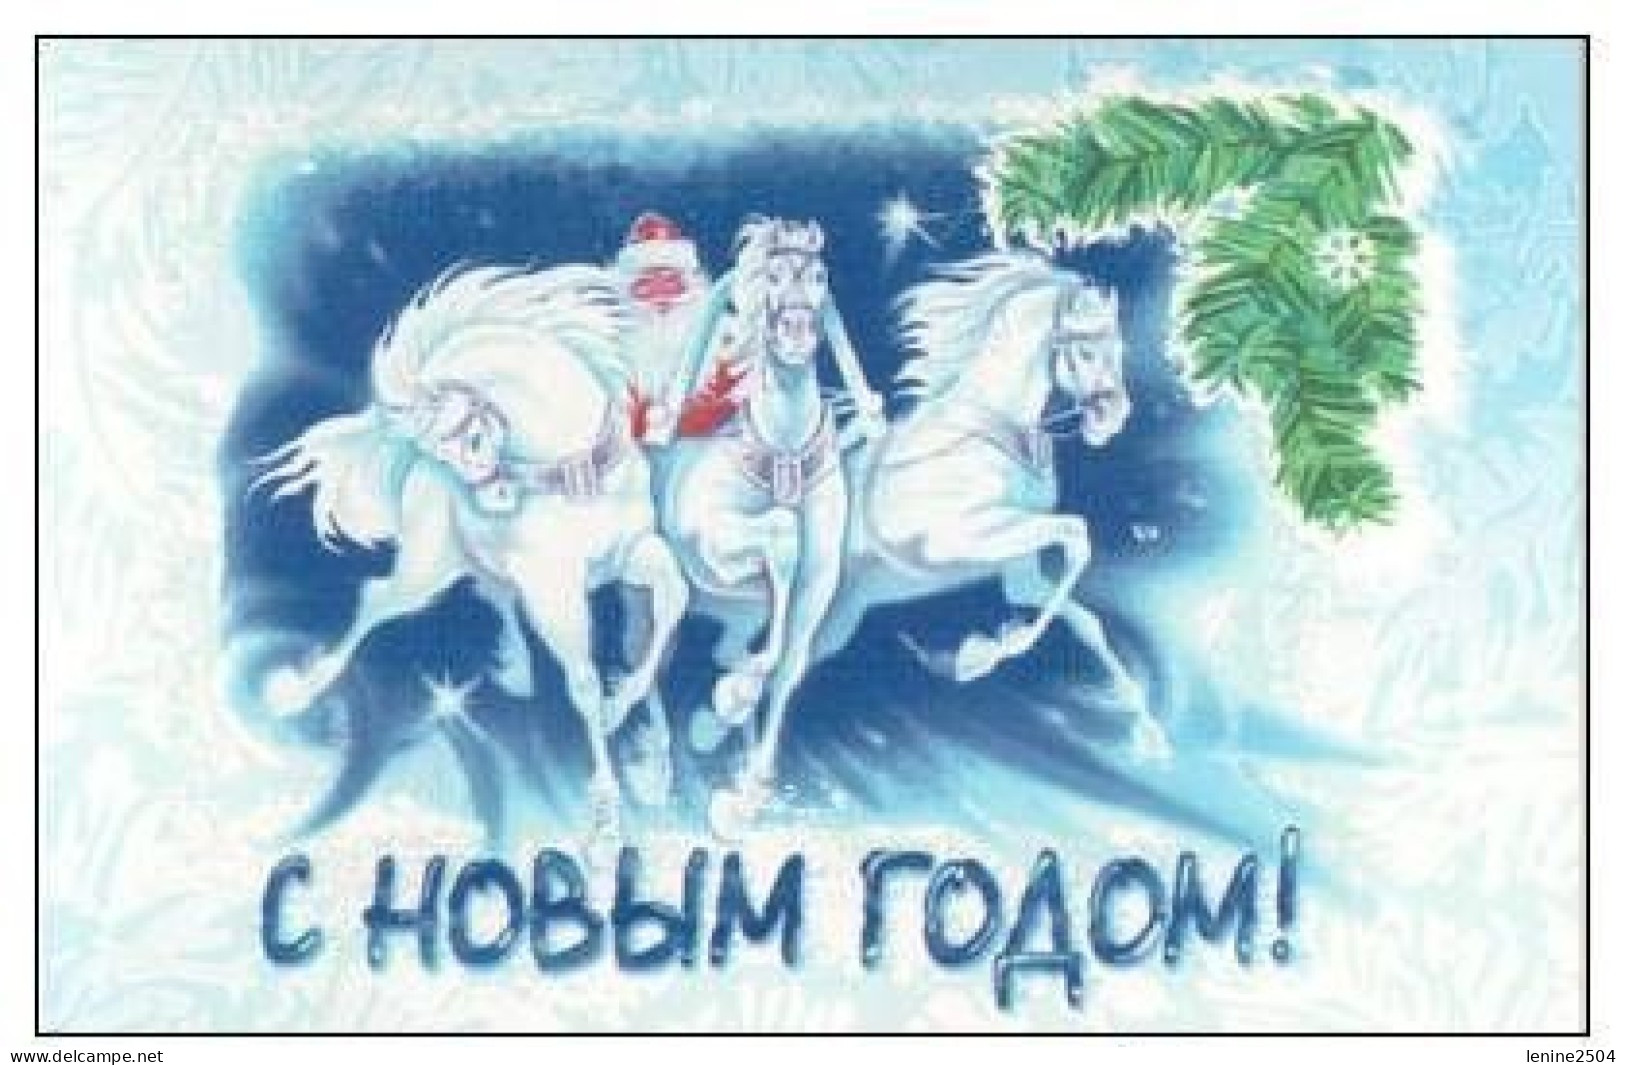 Russie 2001 N° 6603 ** Nouvel AN Emission 1er Jour Carnet Prestige Folder Booklet. - Neufs